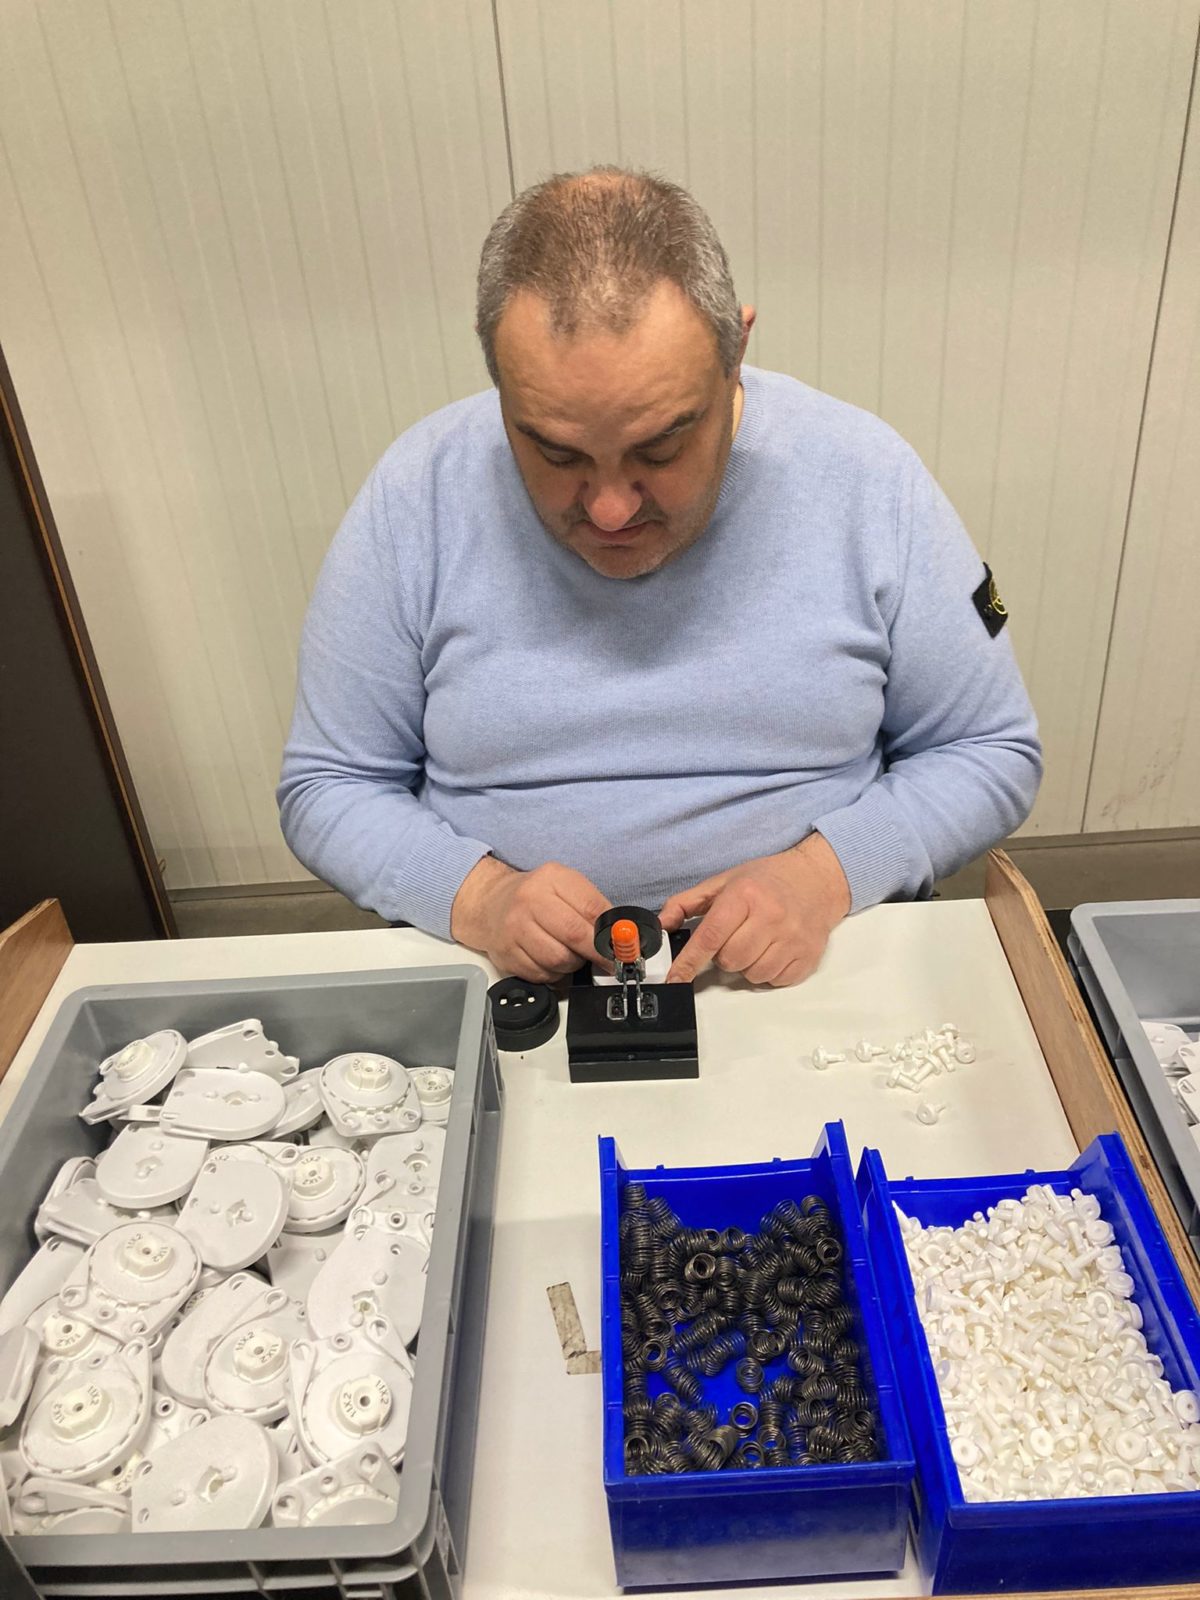 Een medewerker van Bewel assembleert kleine onderdeeltjes voor Hunter Douglas. Voor hem staan bakken met verschillende onderdeeltjes om jaloezieën te assembleren..